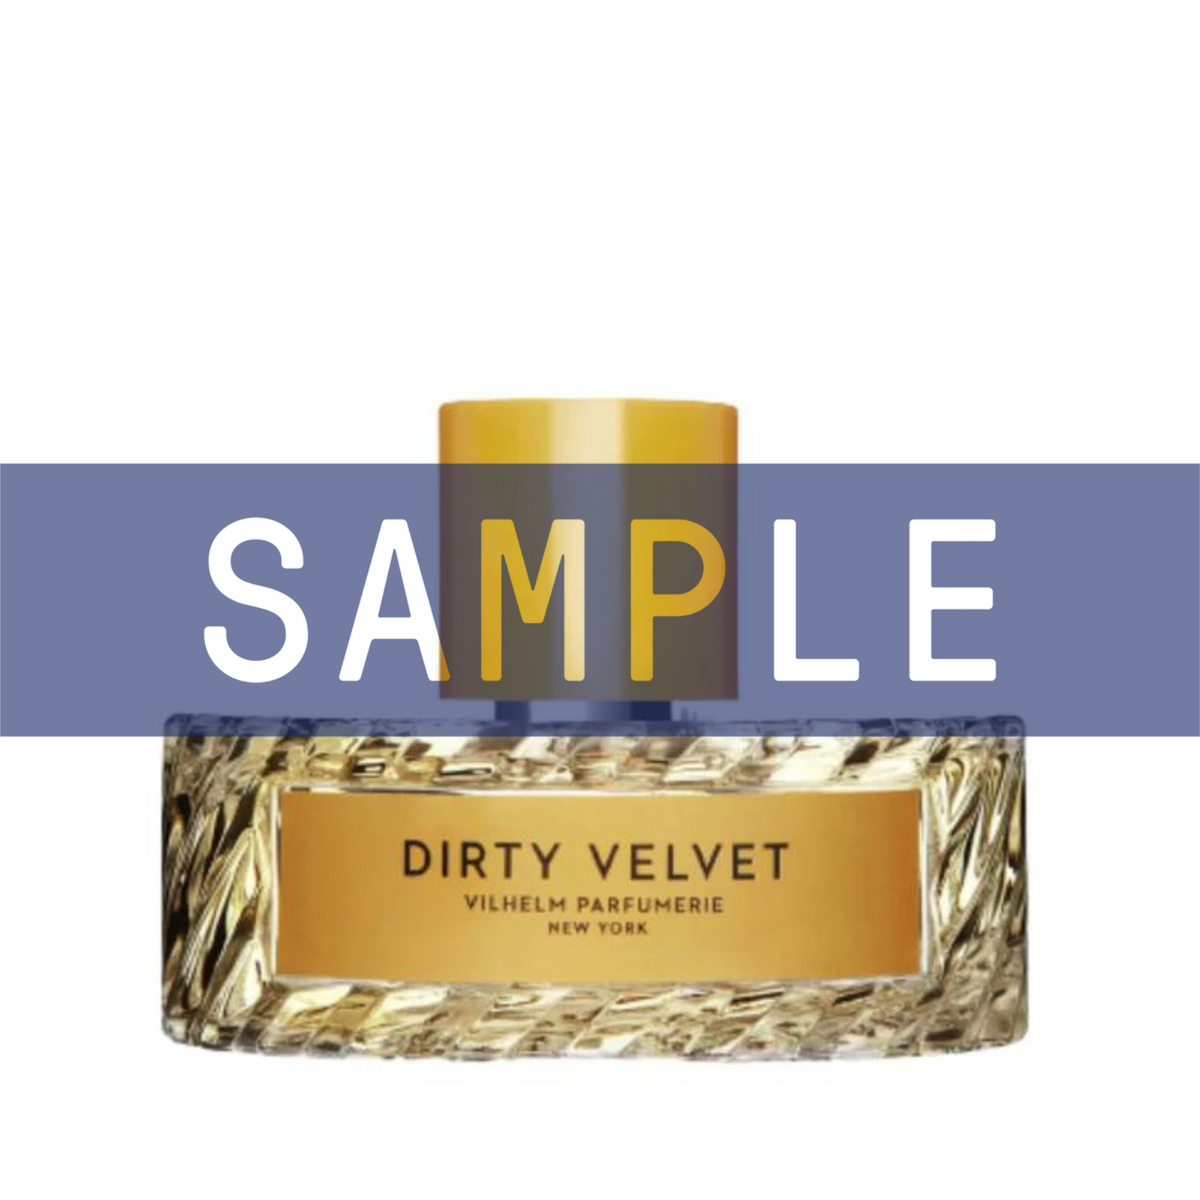 Primary Image of Parfumerie Sample - Dirty Velvet EDP